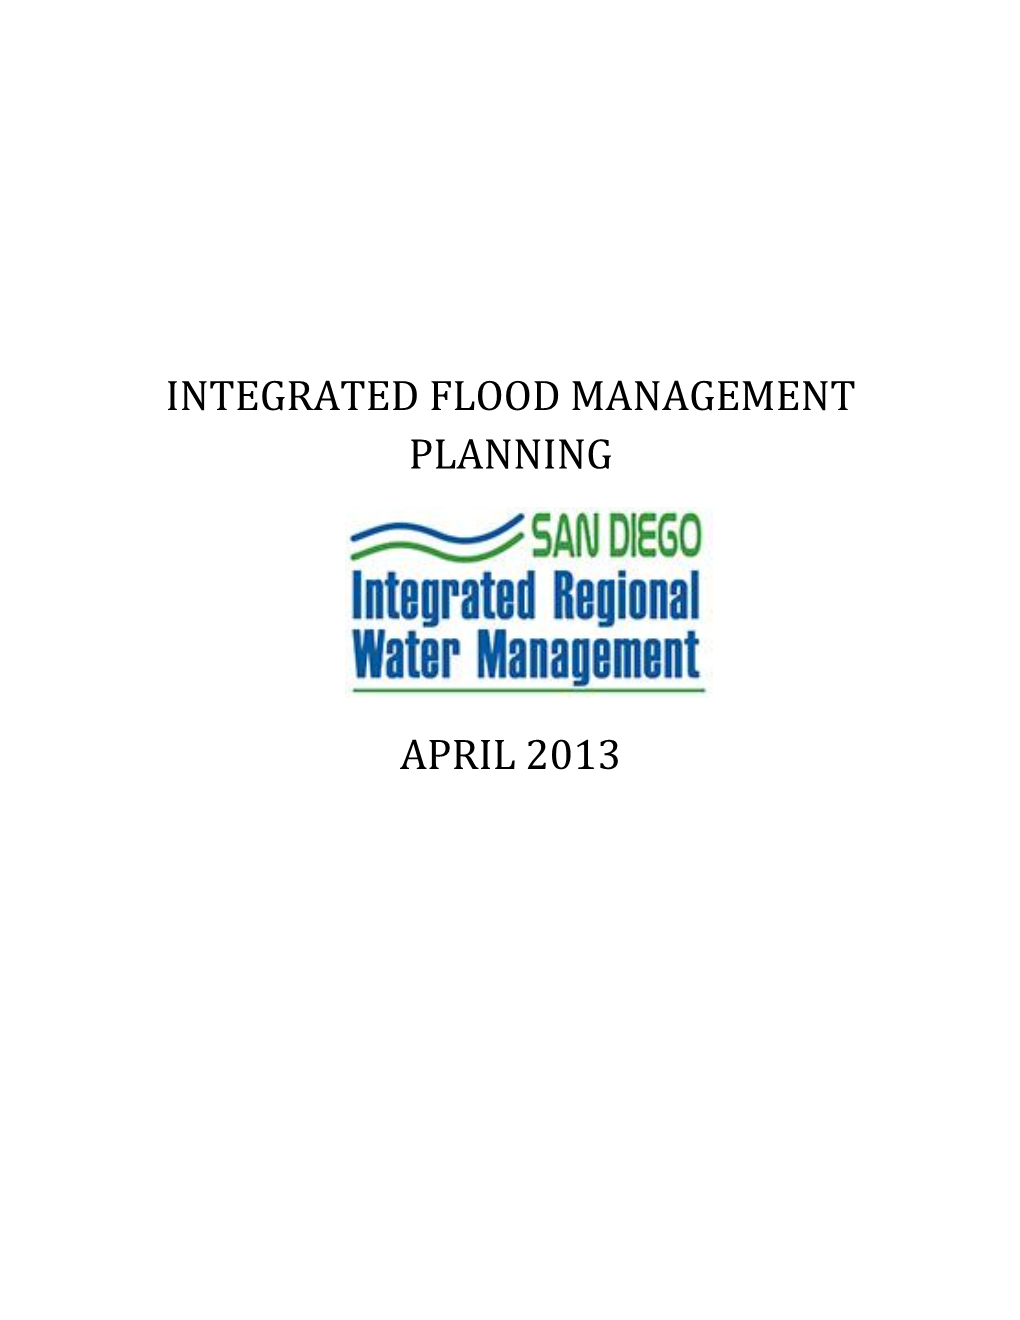 Integrated Flood Management Planning April 2013